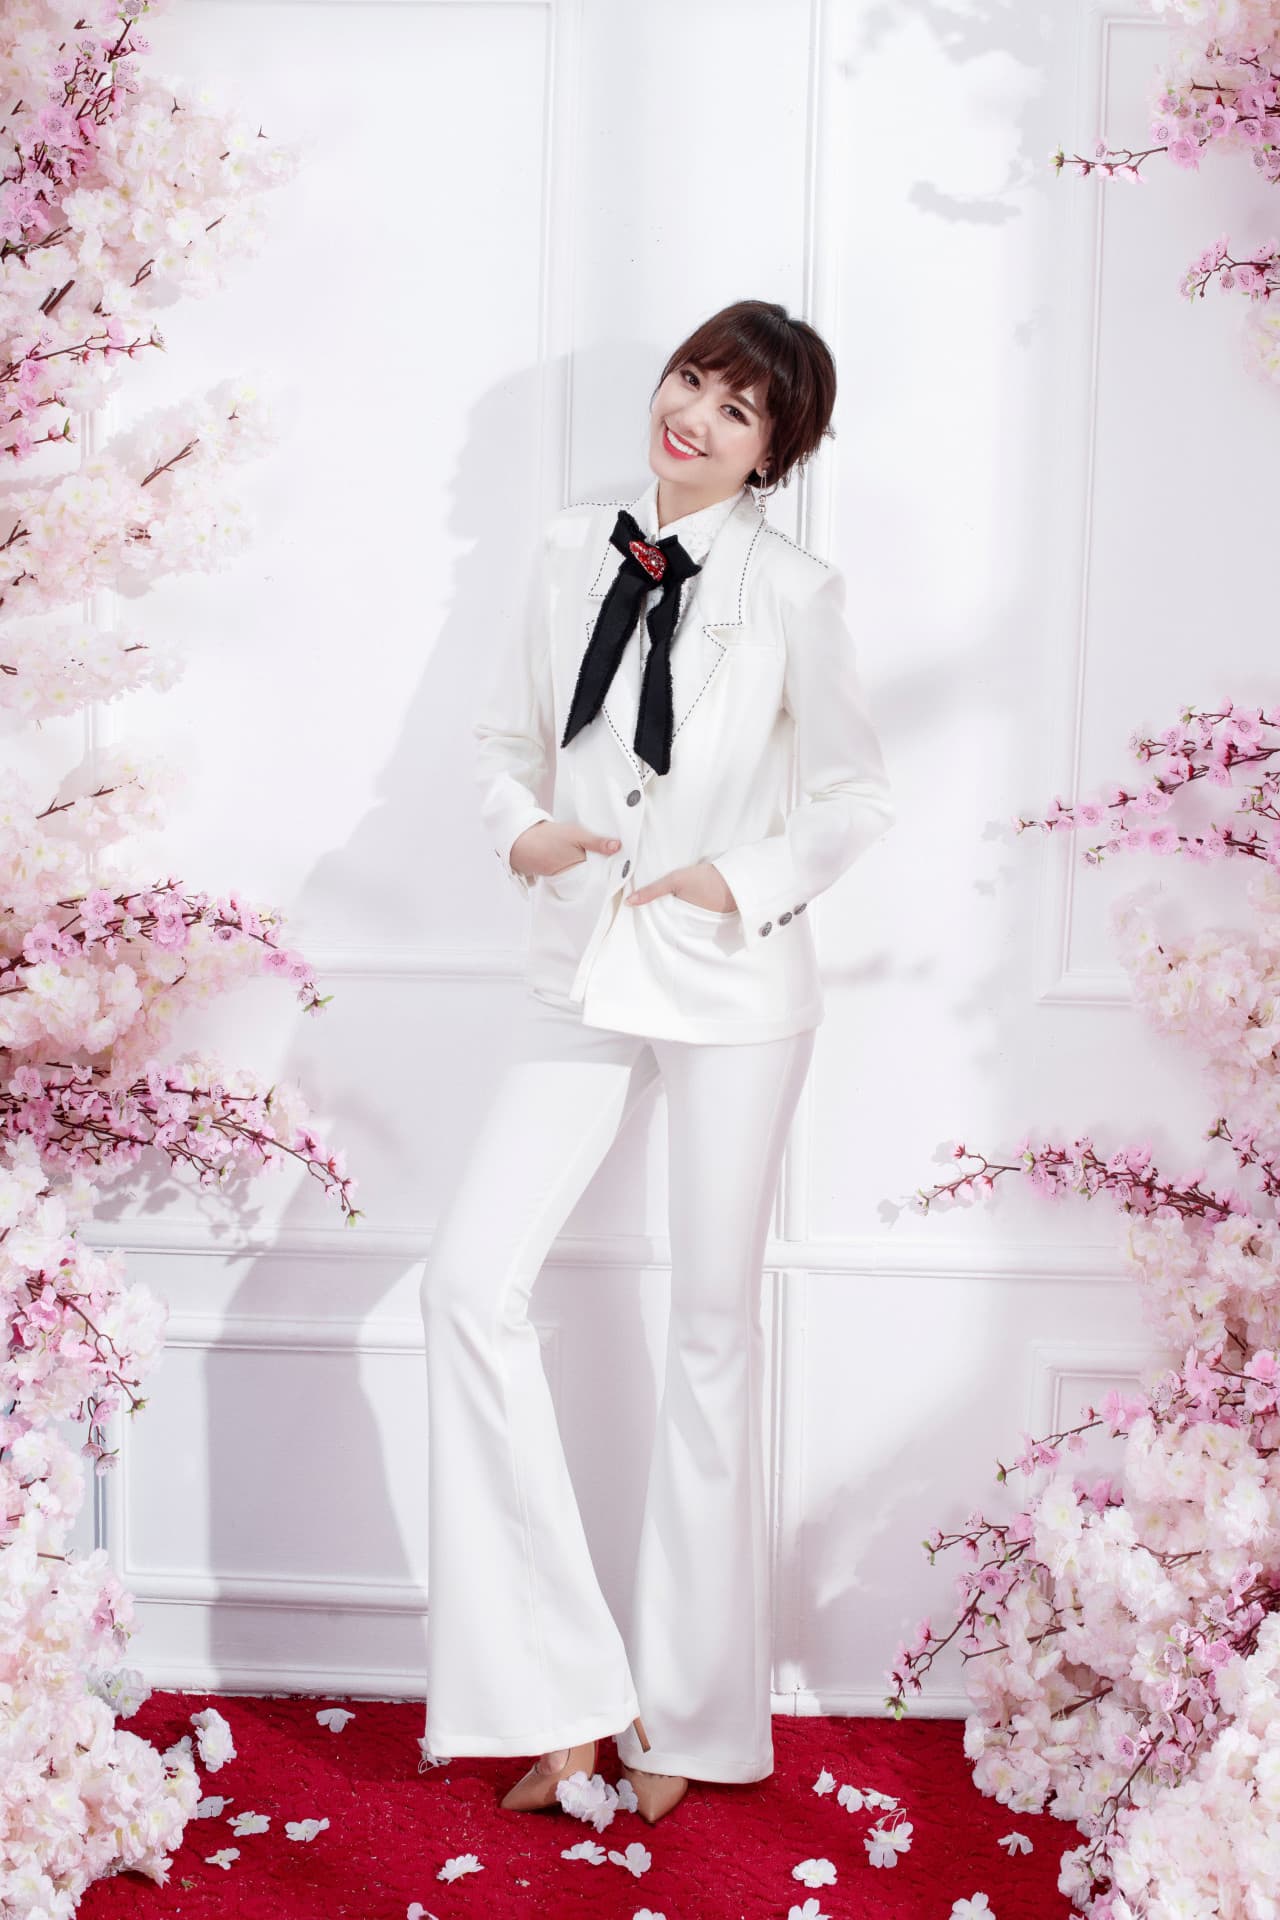 Hariwon diện bộ suit trắng thanh lịch và đơn giản, thời thượng với quần ống loe tôn dáng hiệu quả